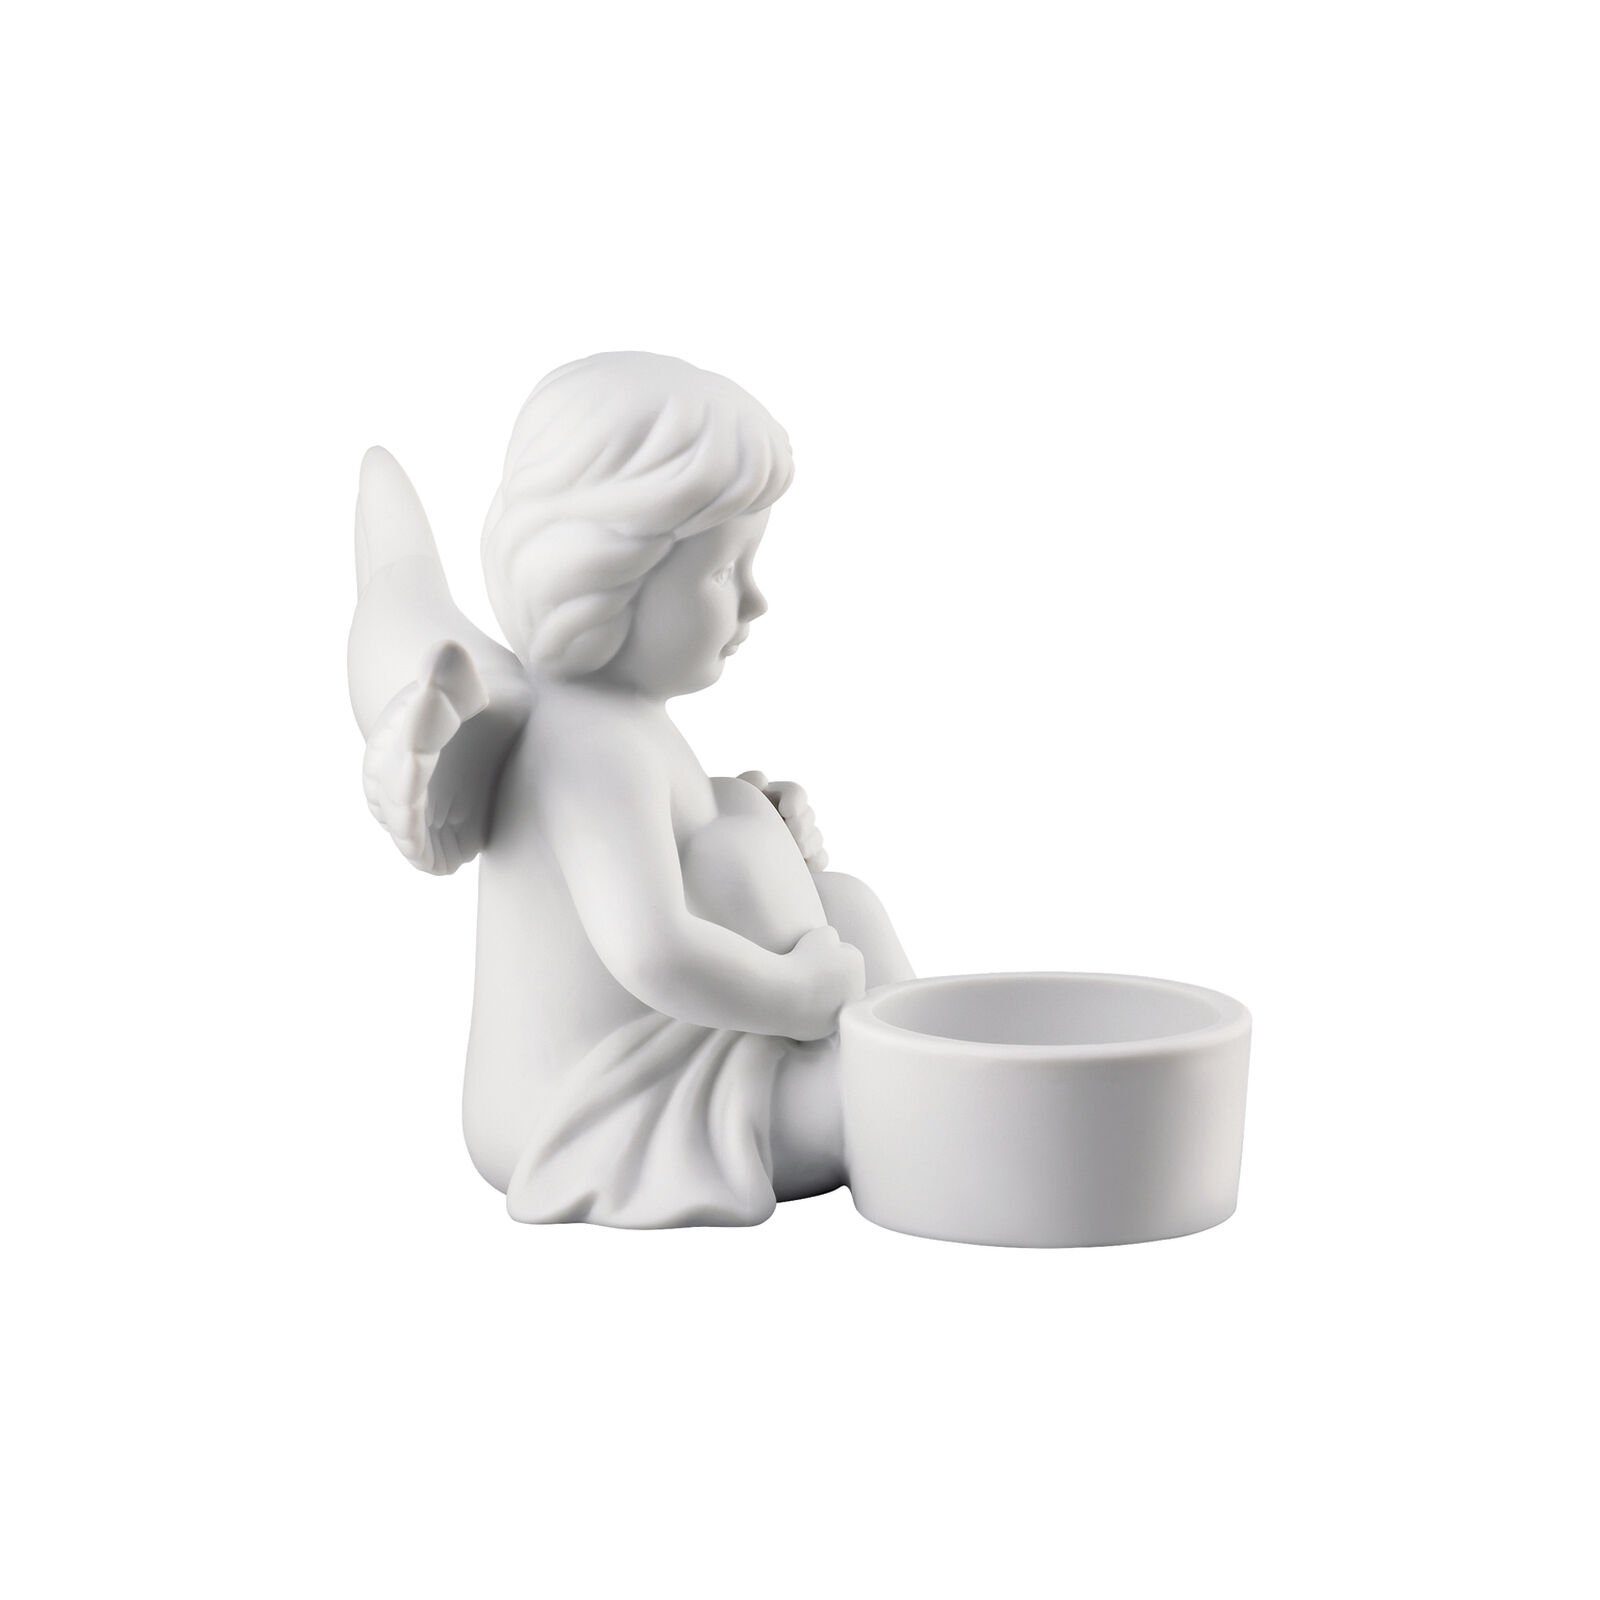 Porzellan Teelichthalter Engel Tischlicht Engel matt mit Weiß Rosenthal aus Herz,